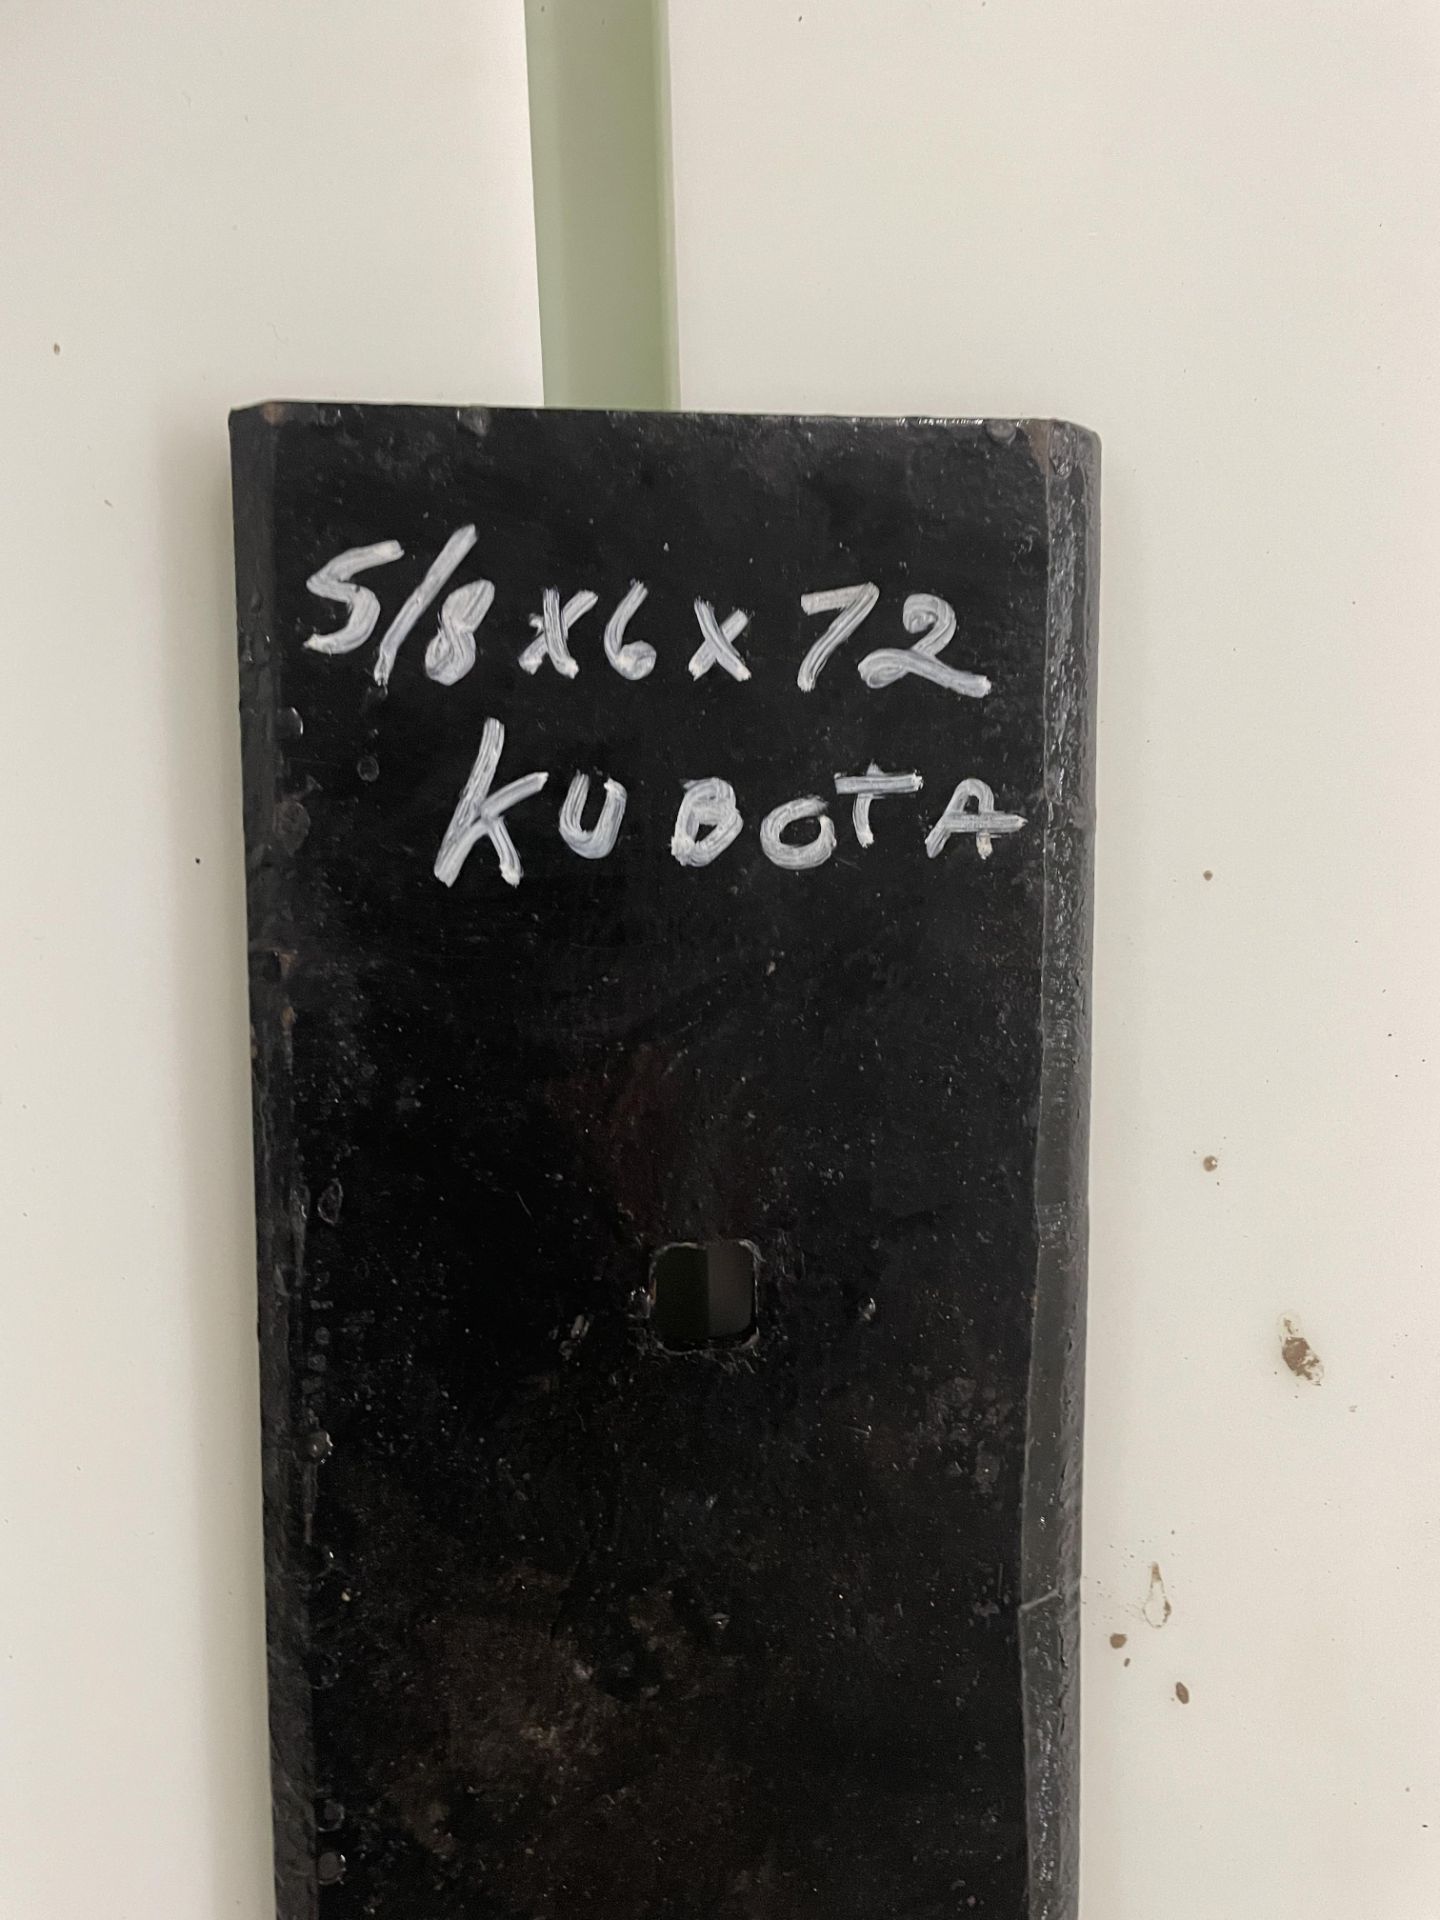 6' Kubota Steel Cutting Edge Double Beveled - Image 2 of 2